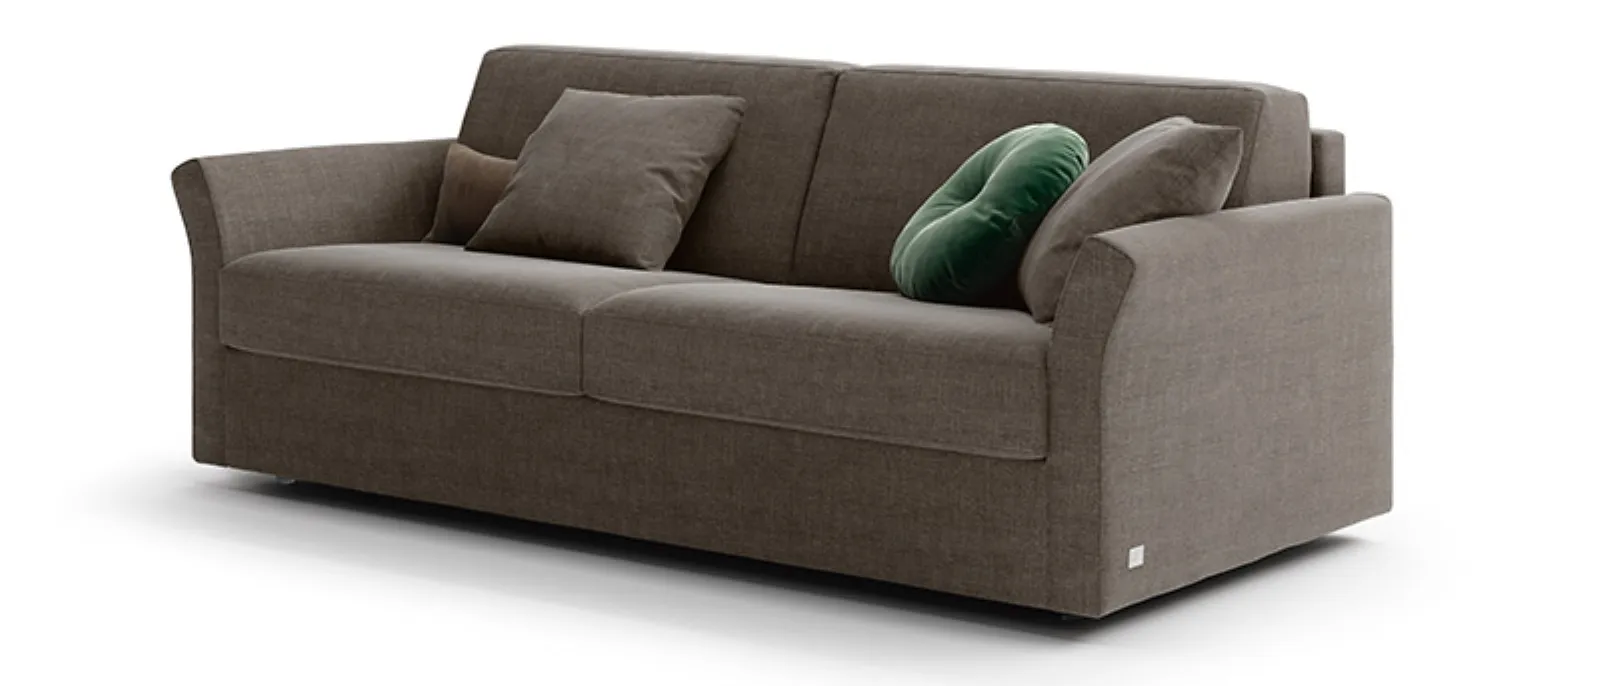 dove gray sofa bed